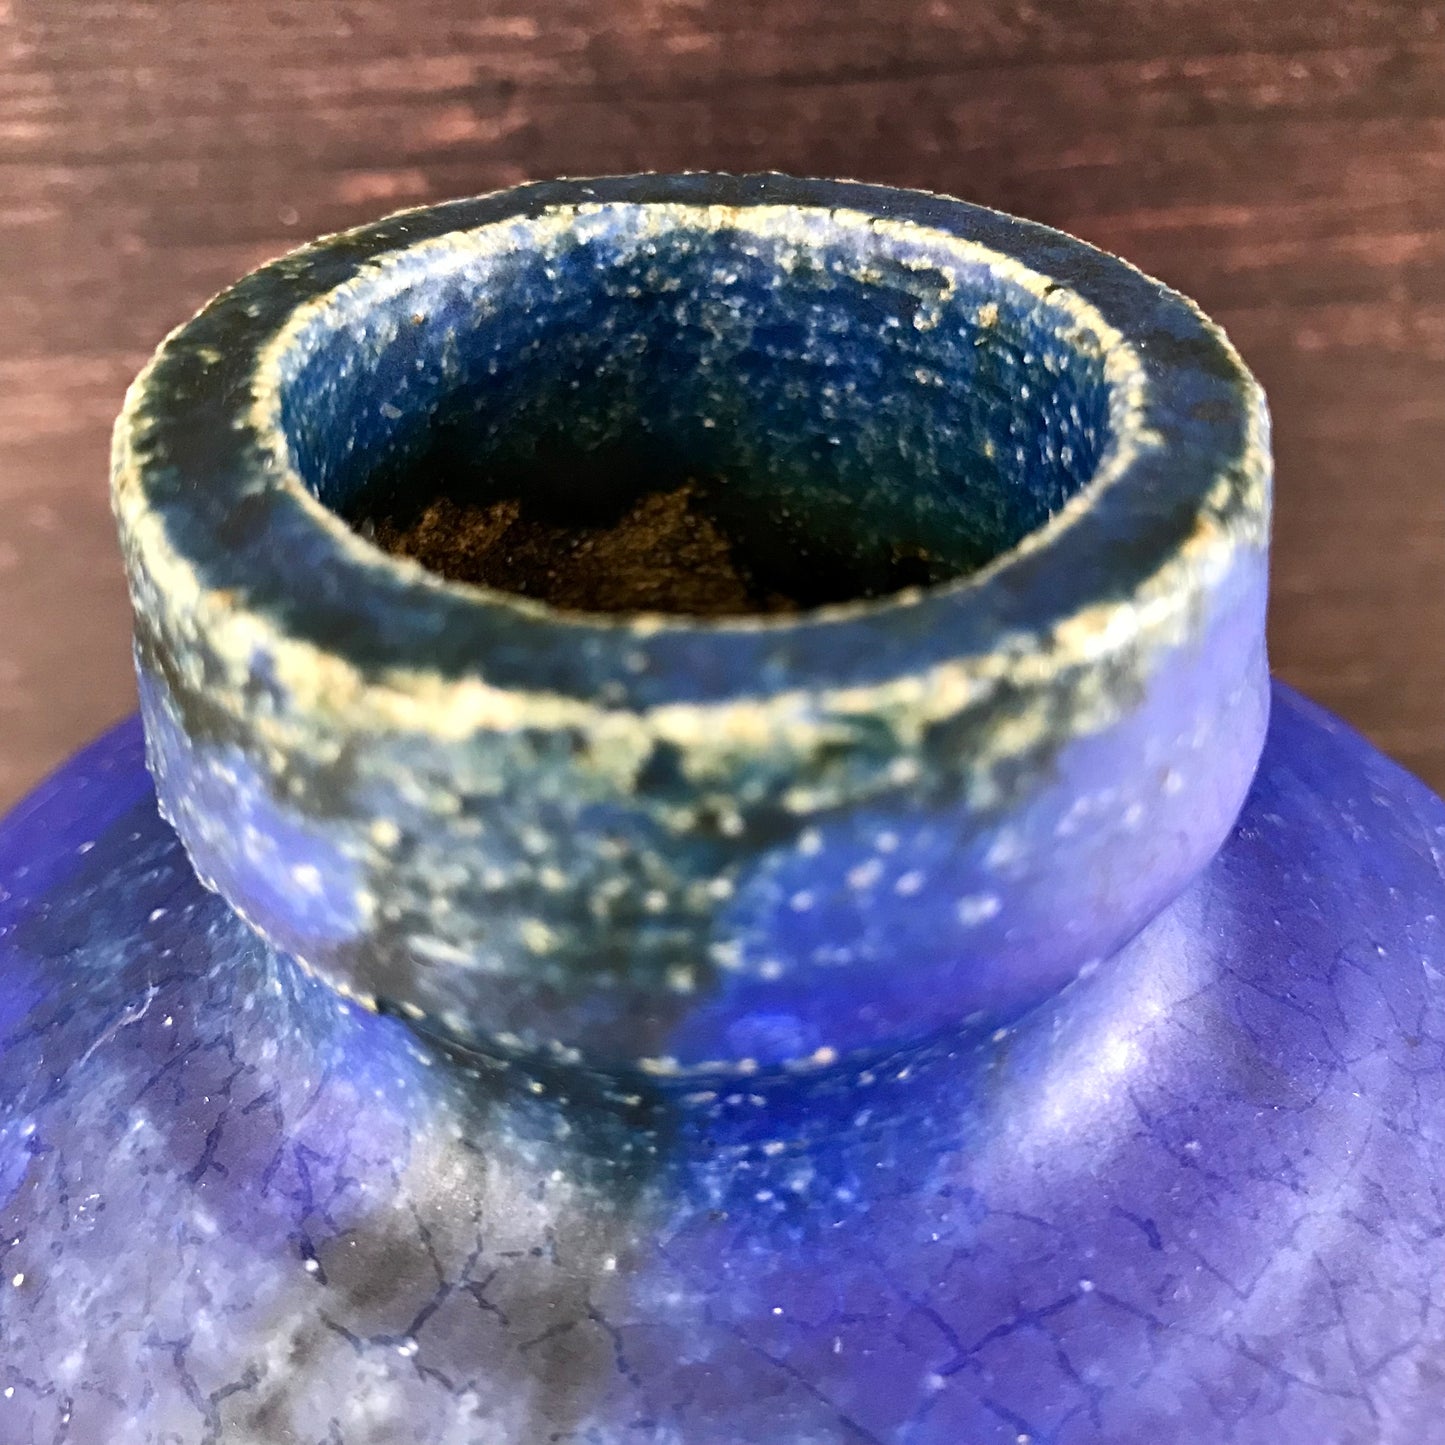 Vintage Blue Danish Studio Pottery Ceramic Vase 1970s